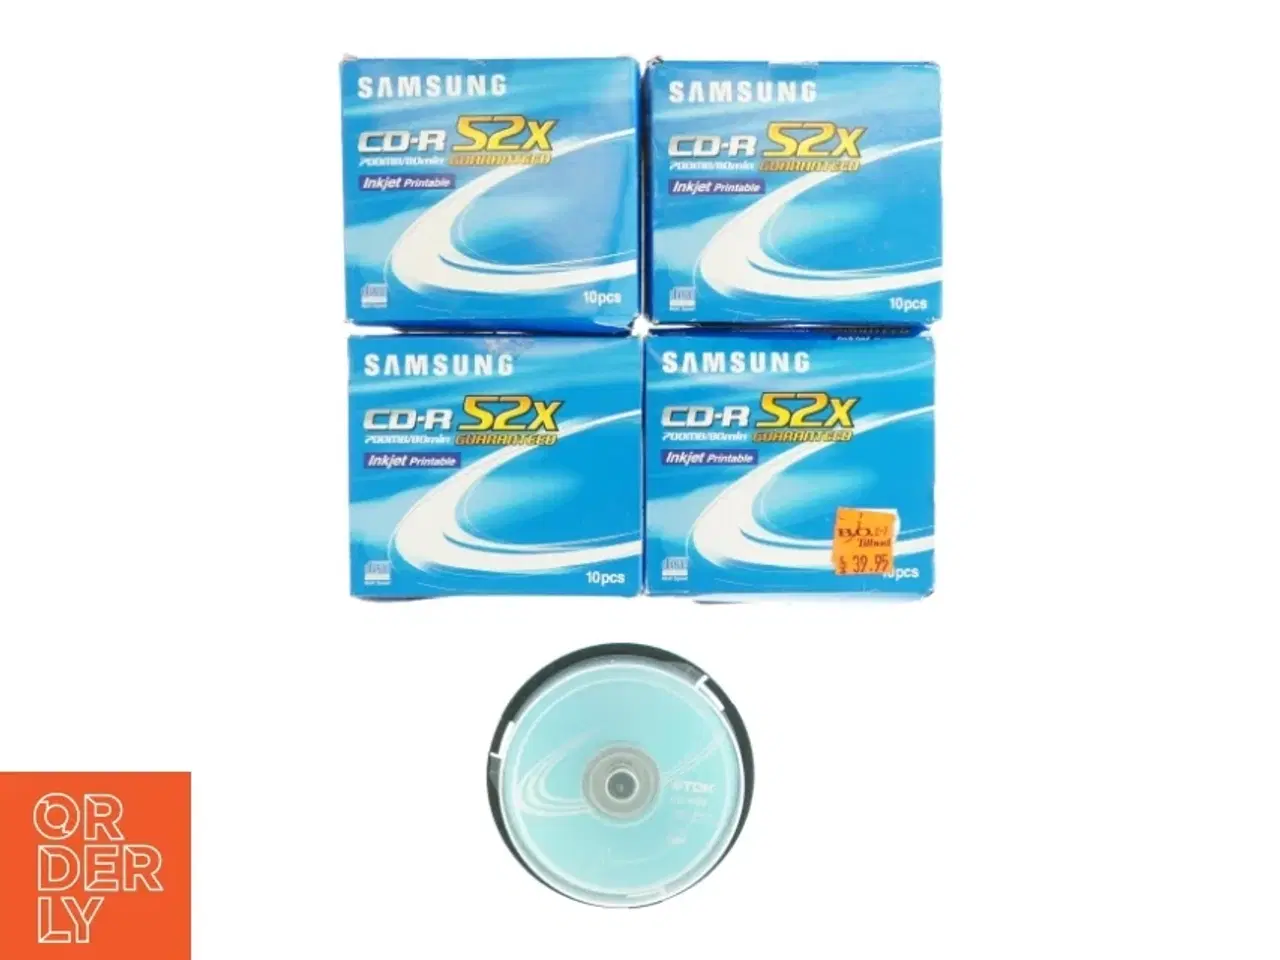 Billede 1 - 4 stk Samsung CD-R 52X og 1 stk TDK CD-R 80